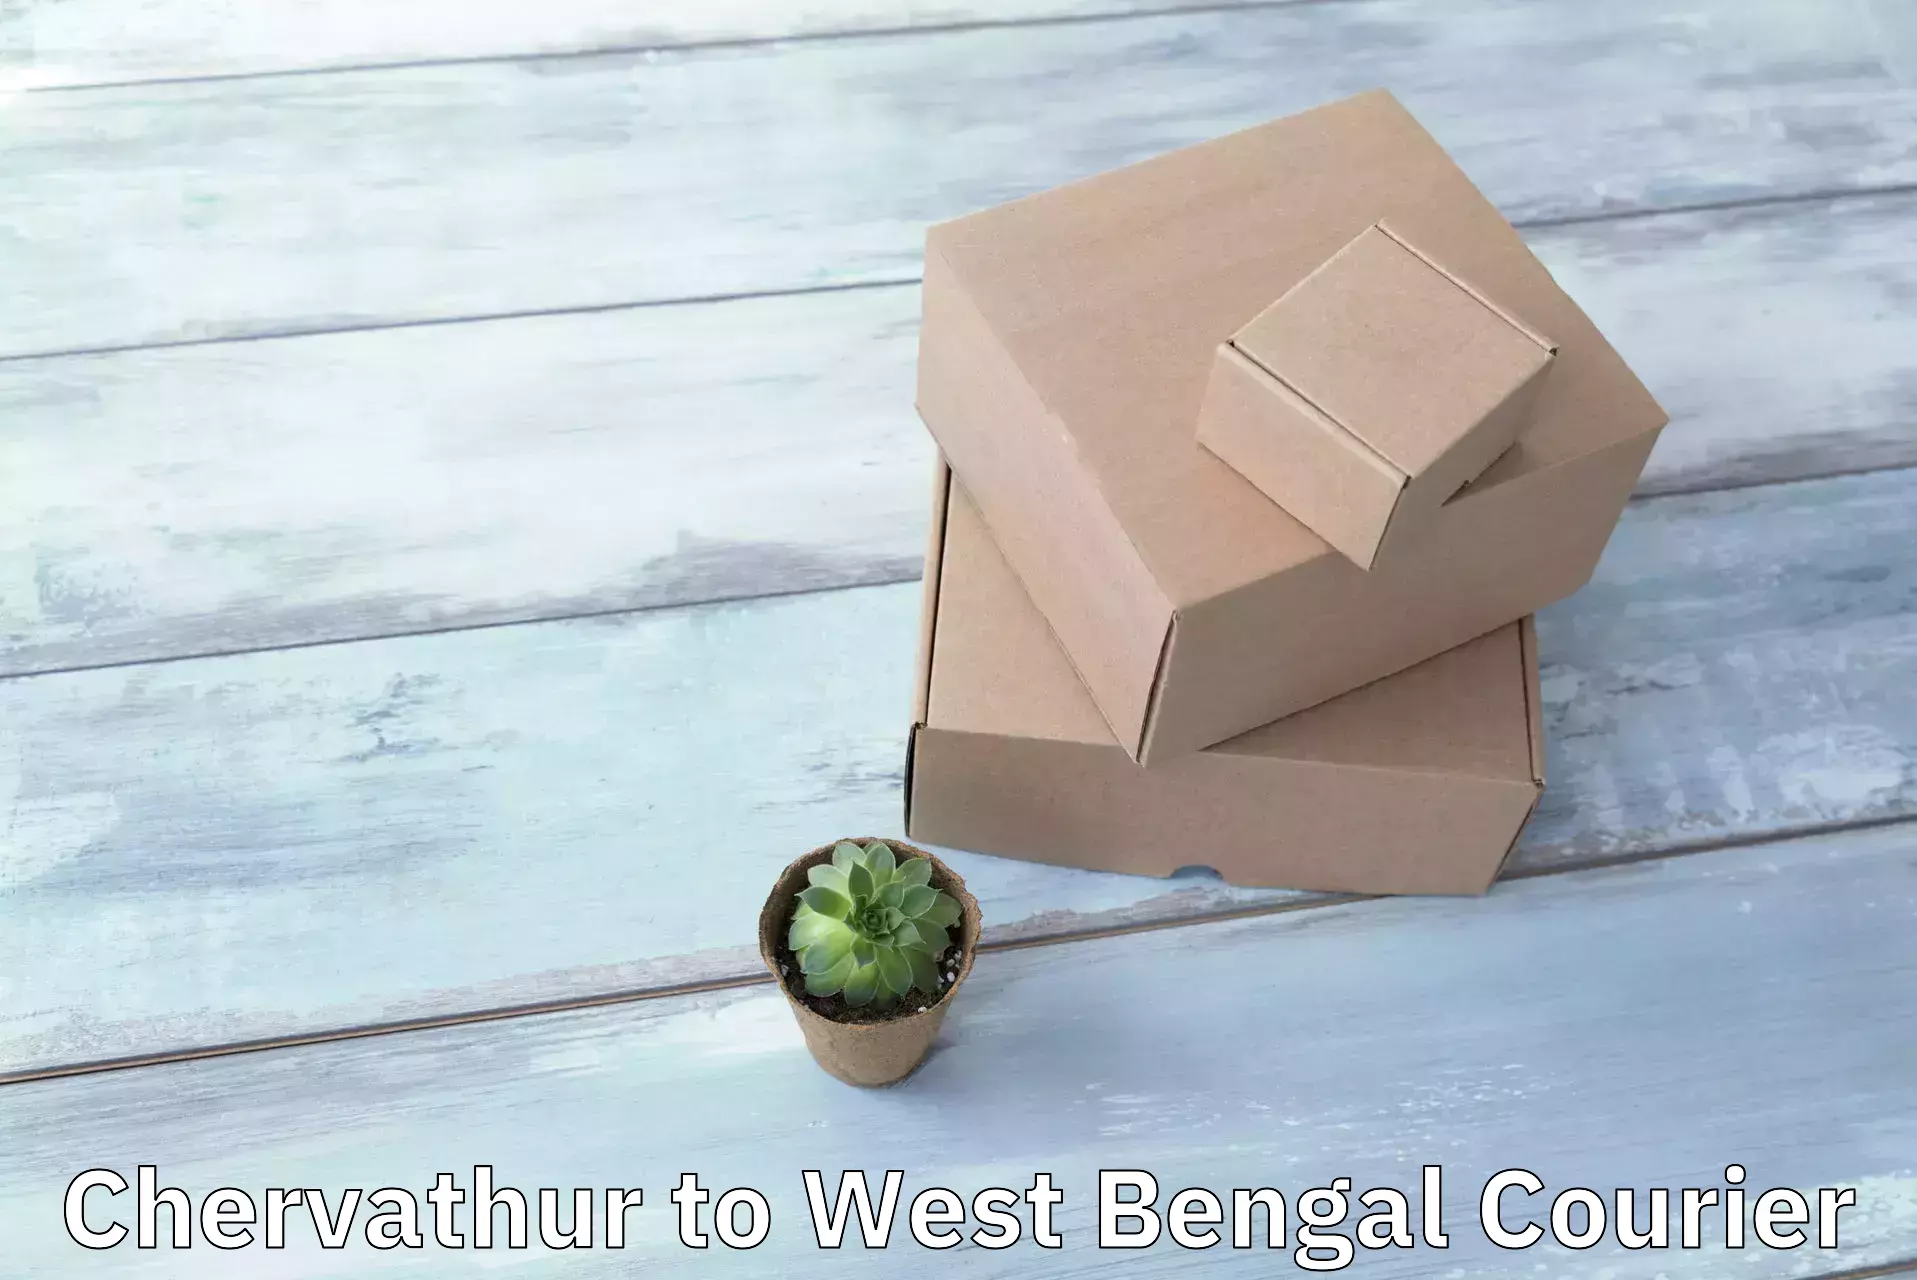 Efficient parcel delivery Chervathur to Alipore